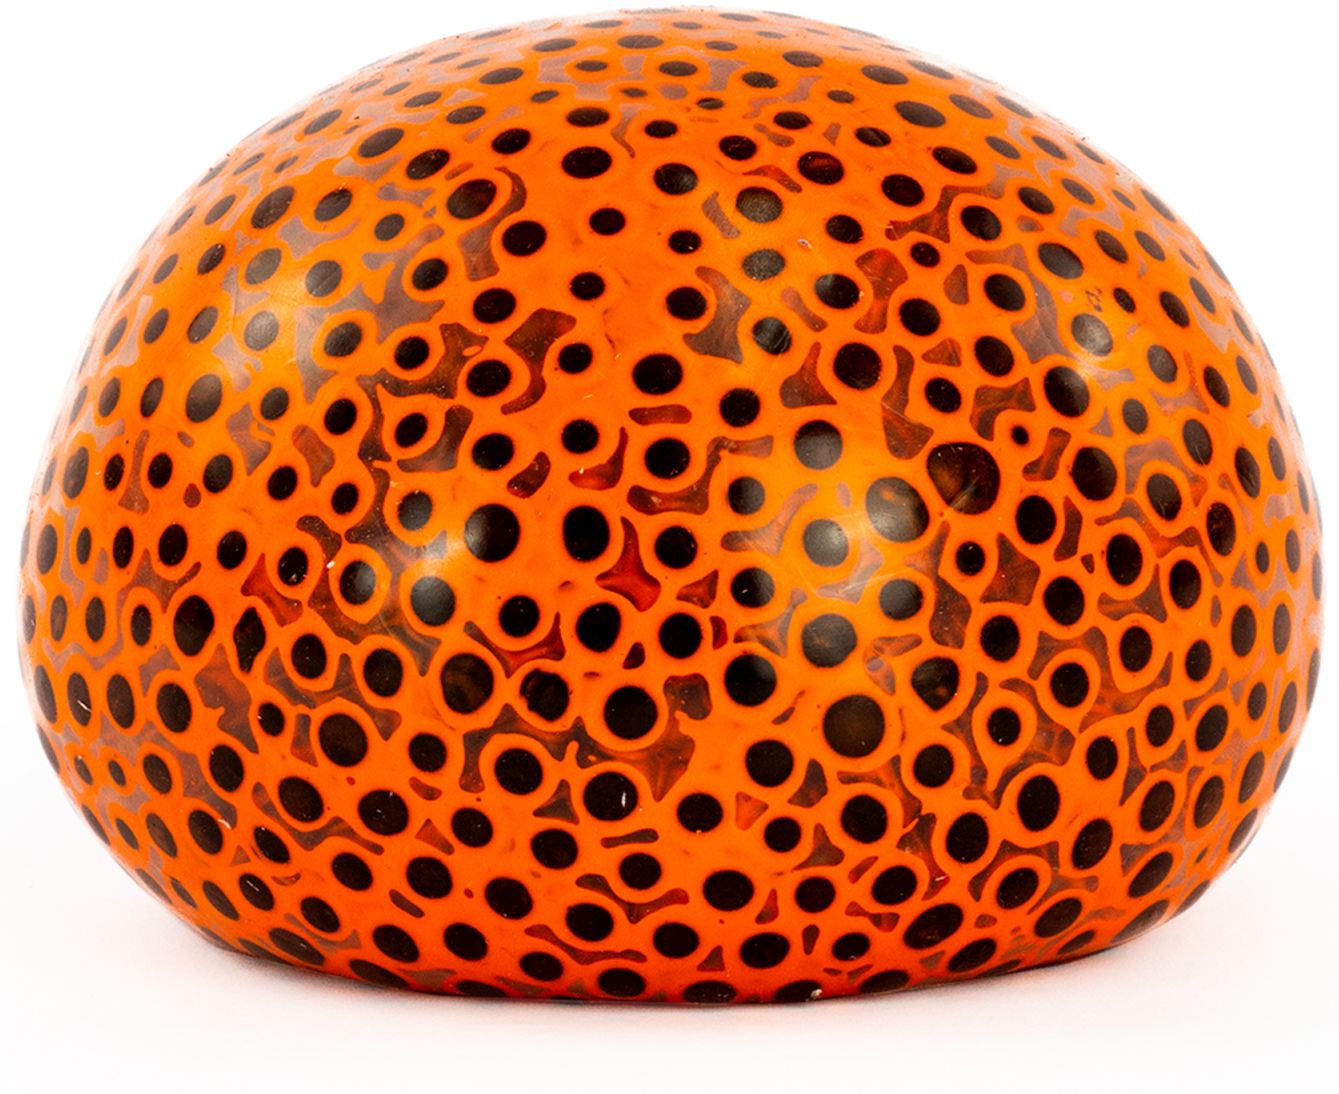 Fumfings Beadz Alive Giant Ball orange